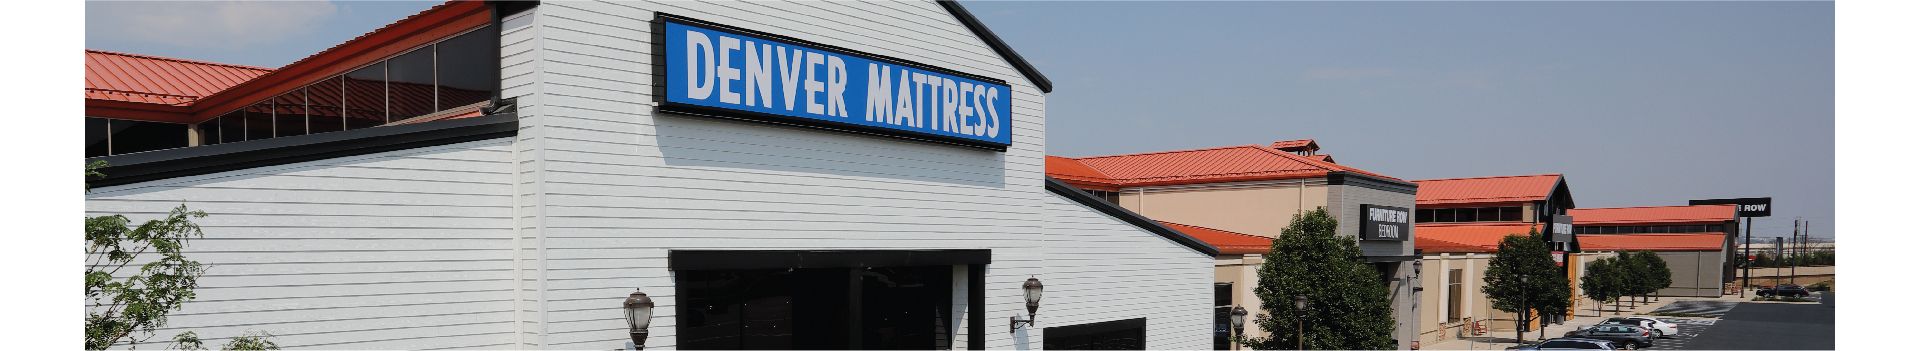 Denver Mattress Flagship Store